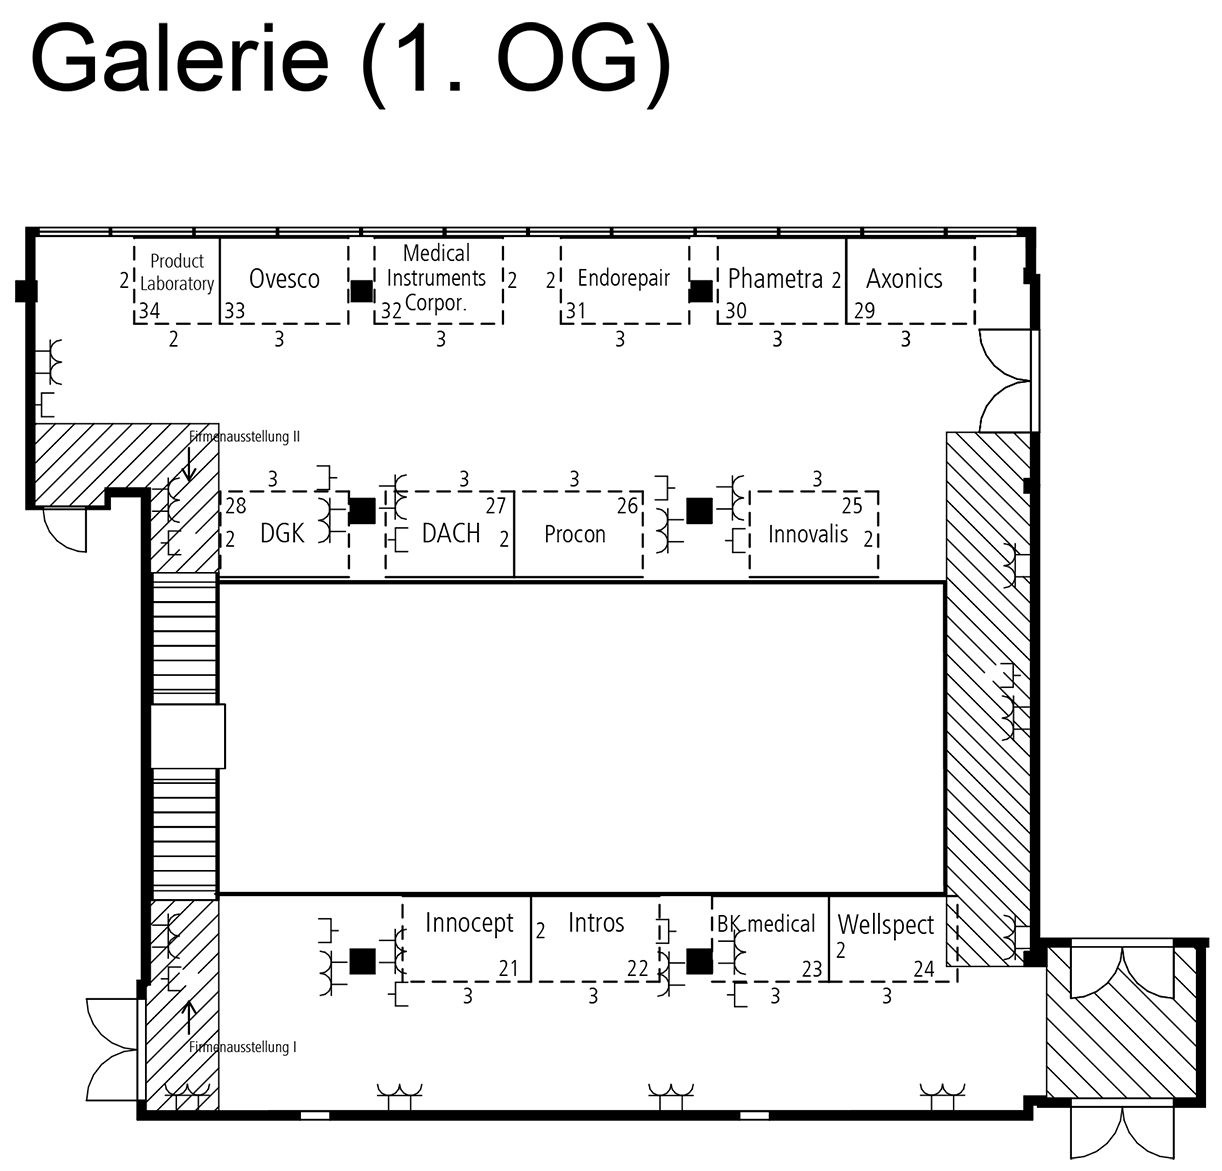 Galerie (1.OG) - Hauptkongress